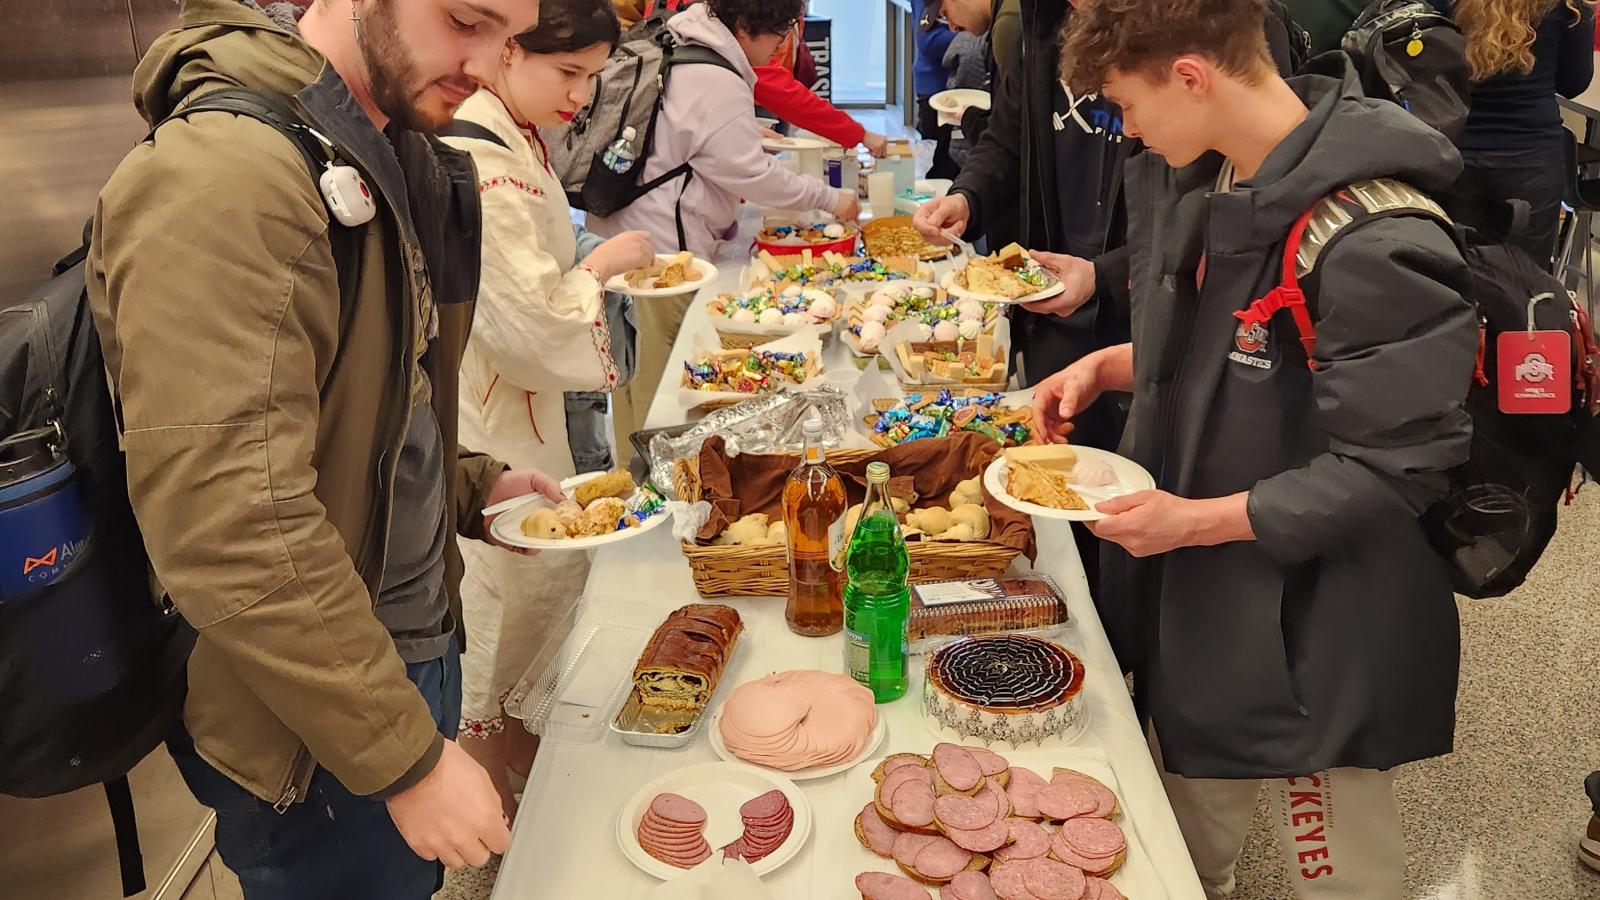 other students get food while performances begin at kapustnik